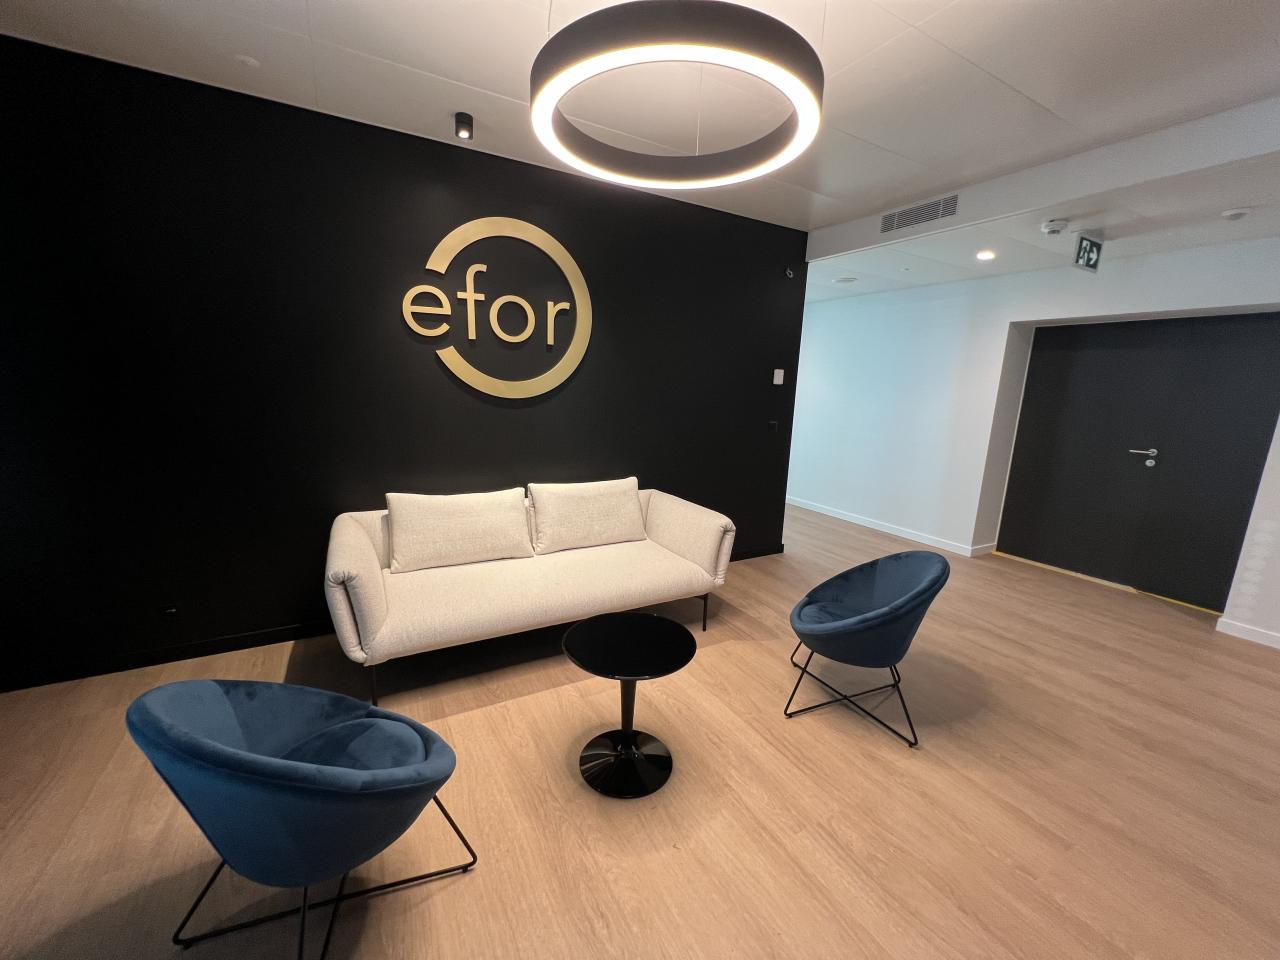 EDIFEA réalise les aménagements intérieurs du Groupe EFOR